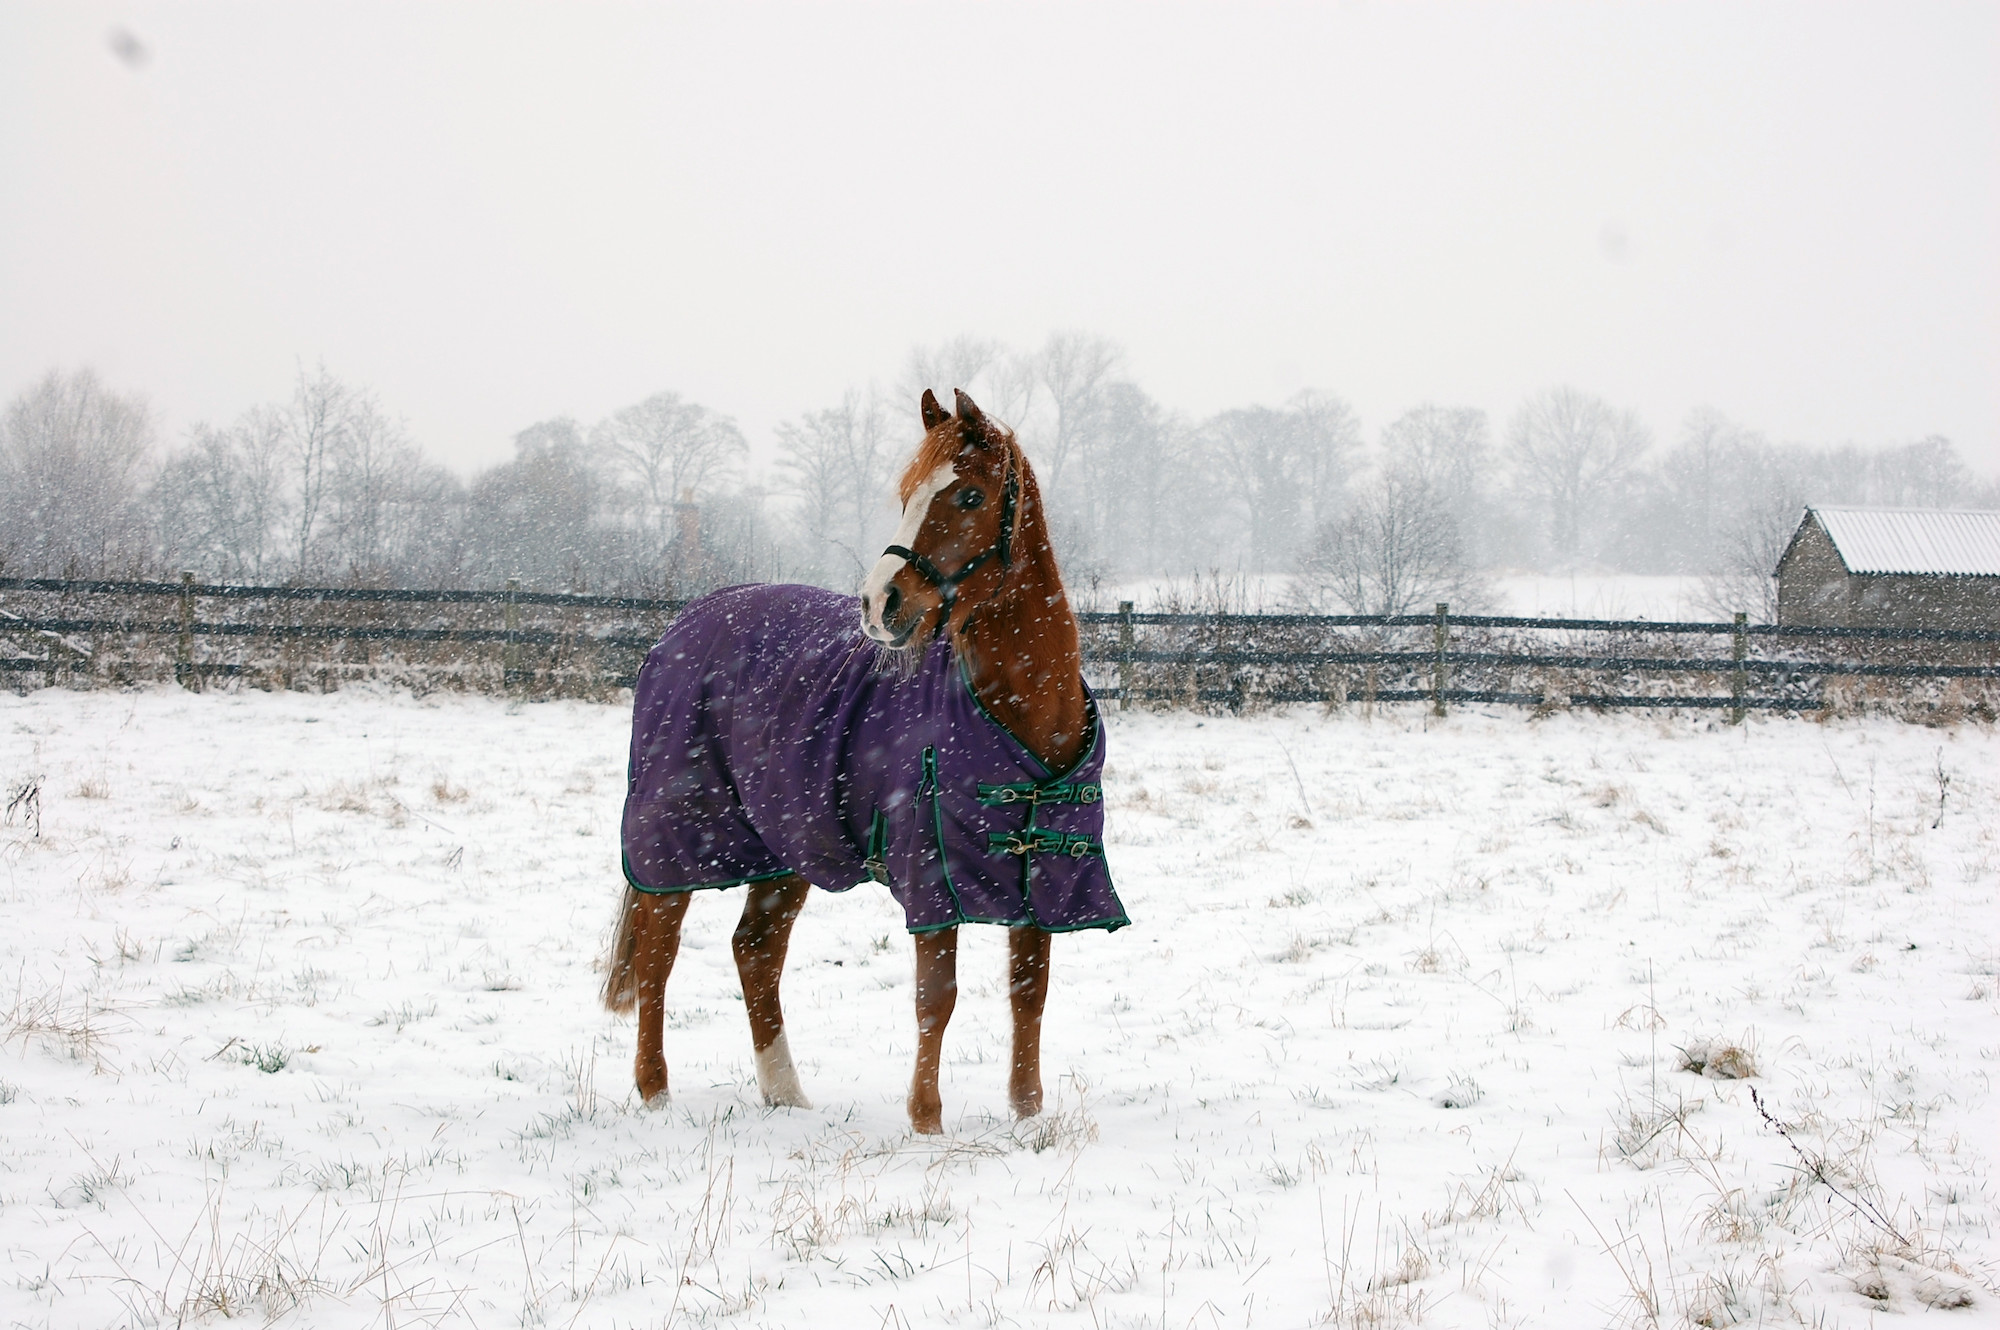 Horse wearing a rug in a snowy field